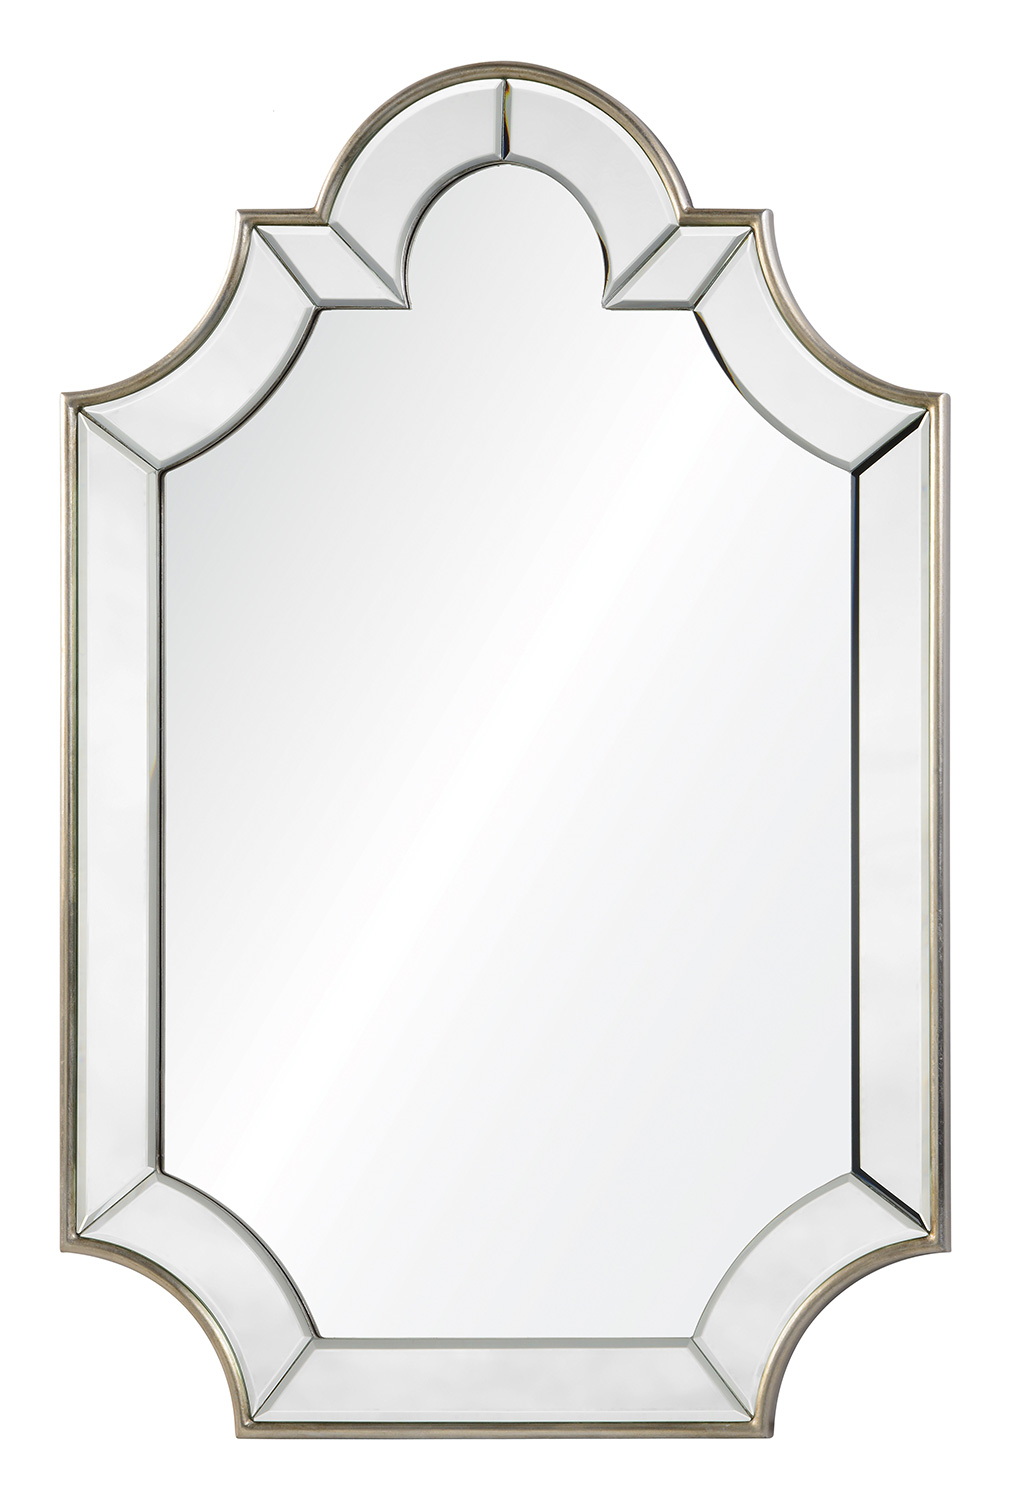 Cooper Classics Bienville Mirror - Silver